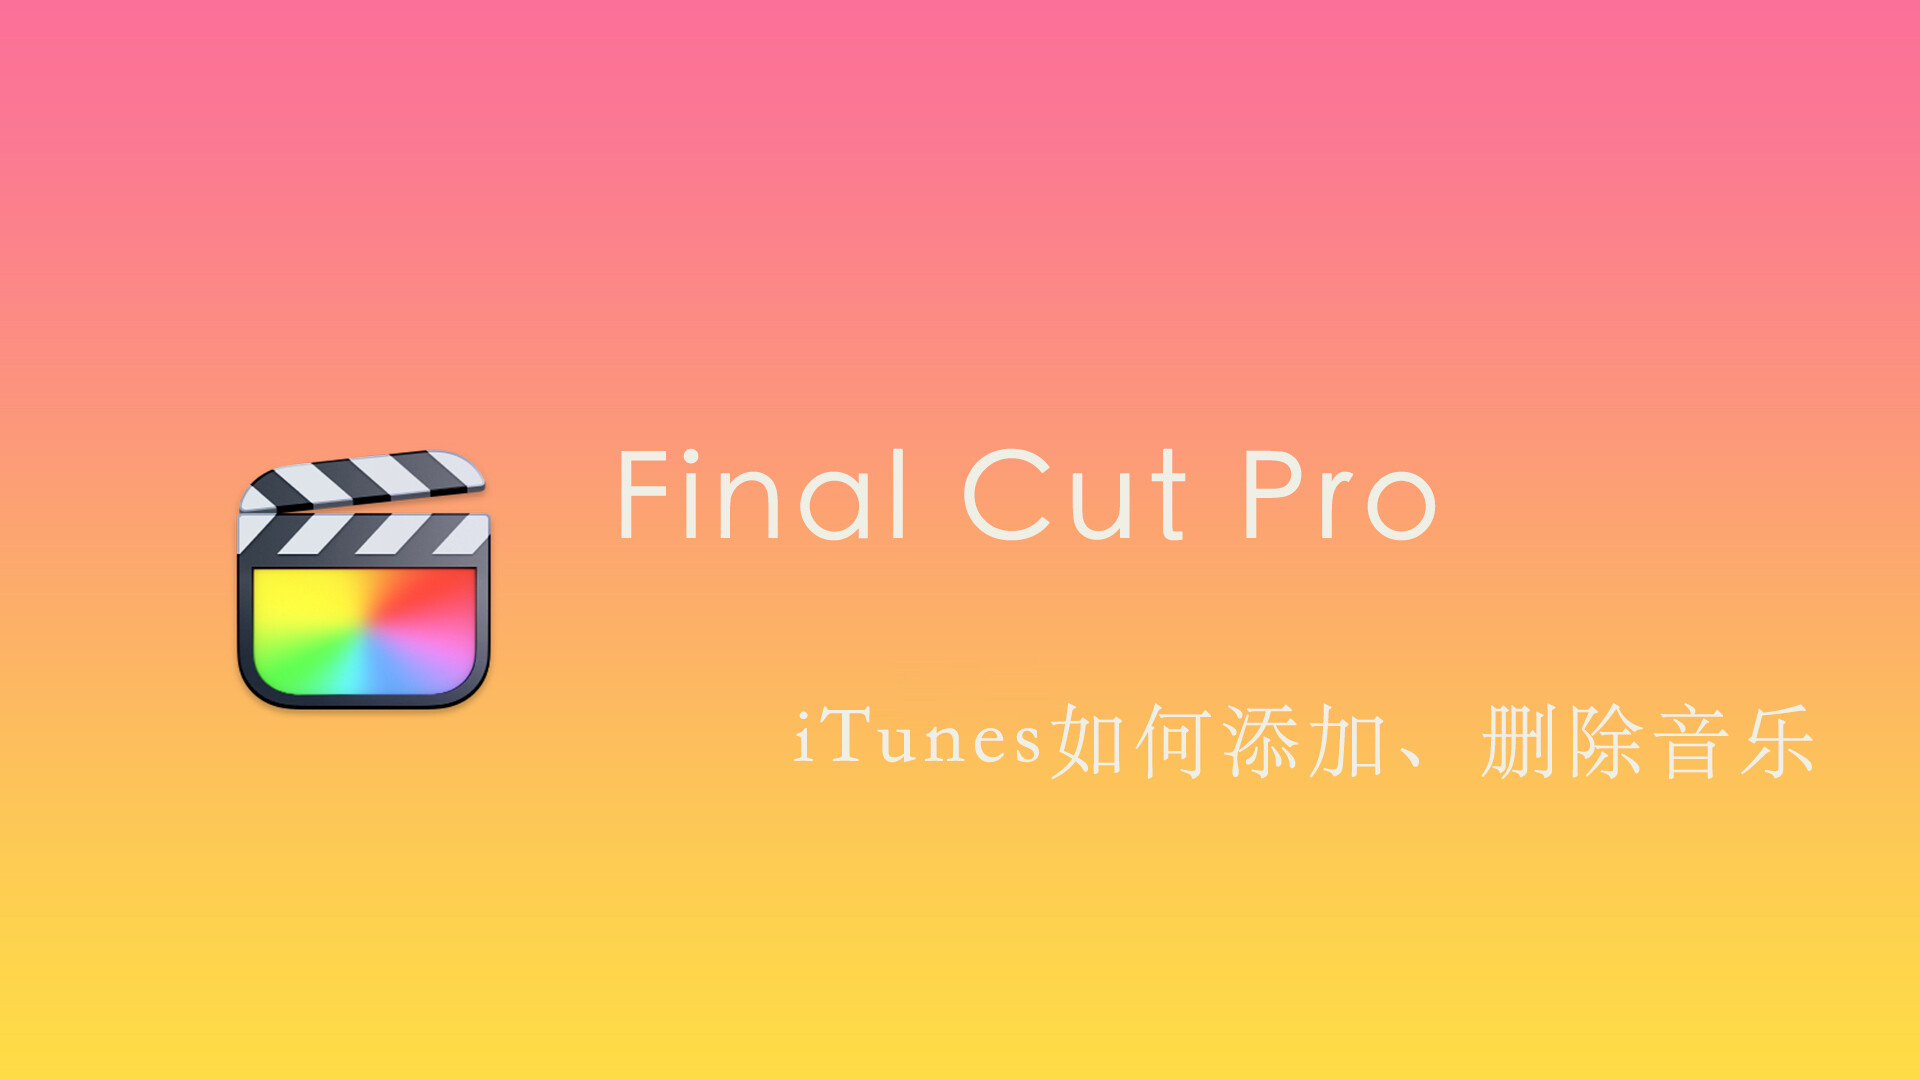 Final Cut Pro 中文基础教程(47)iTunes如何添加、删除音乐